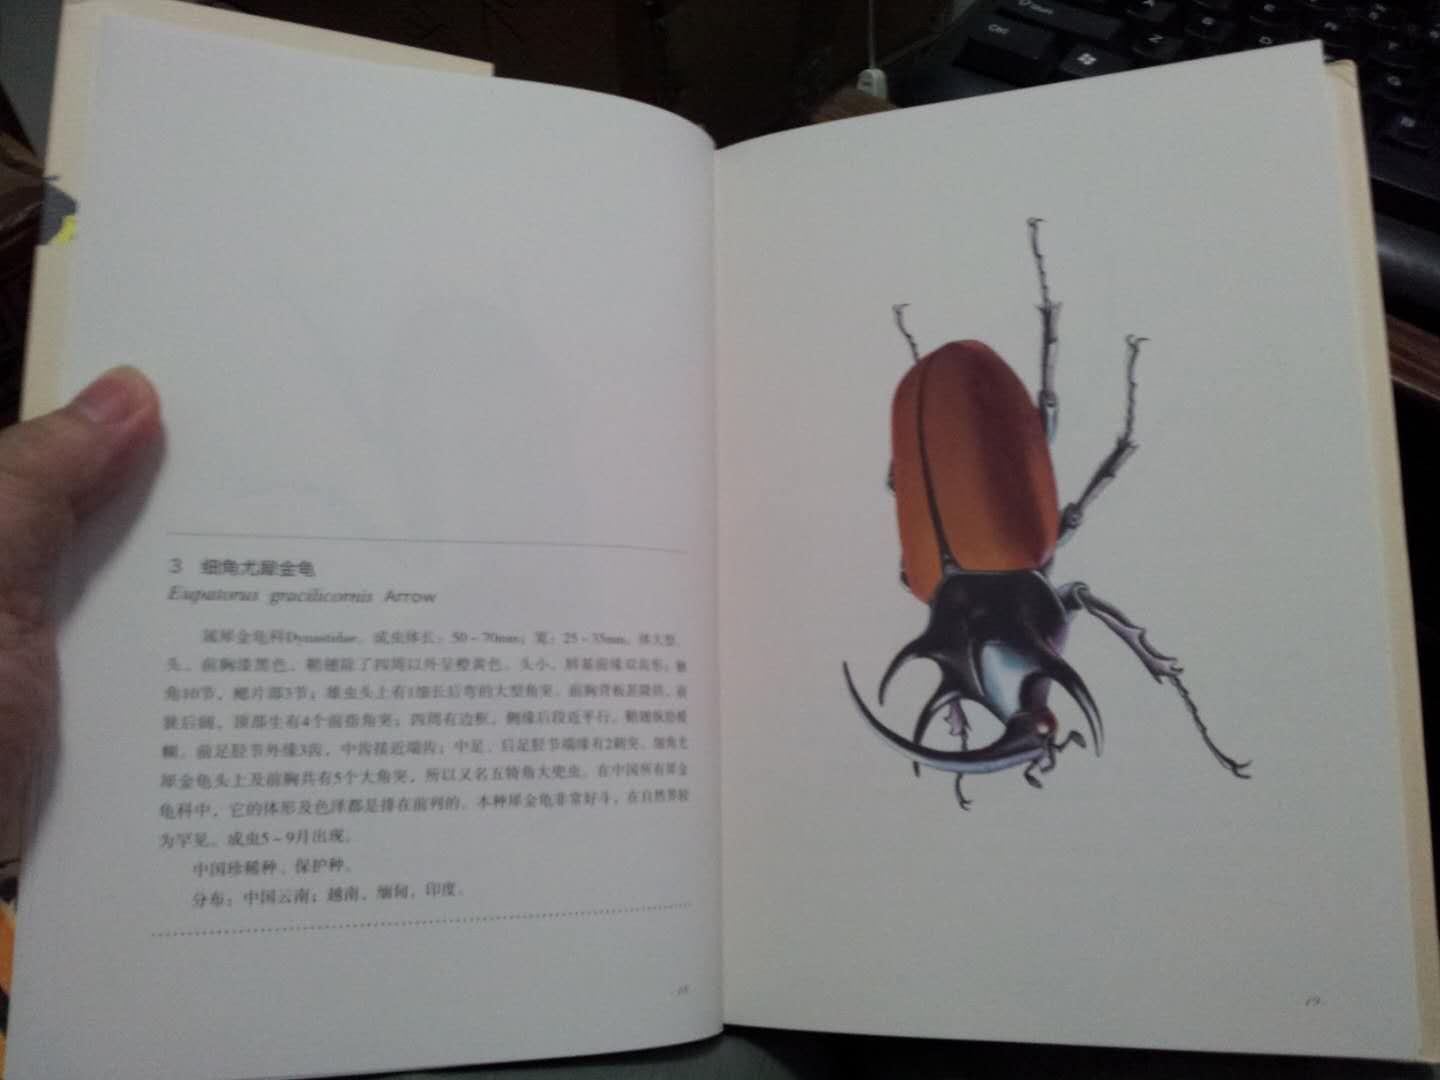 作者精心绘制的甲虫图比照片更生动，每只占一页画幅，附有简要介绍文字，通俗易懂。